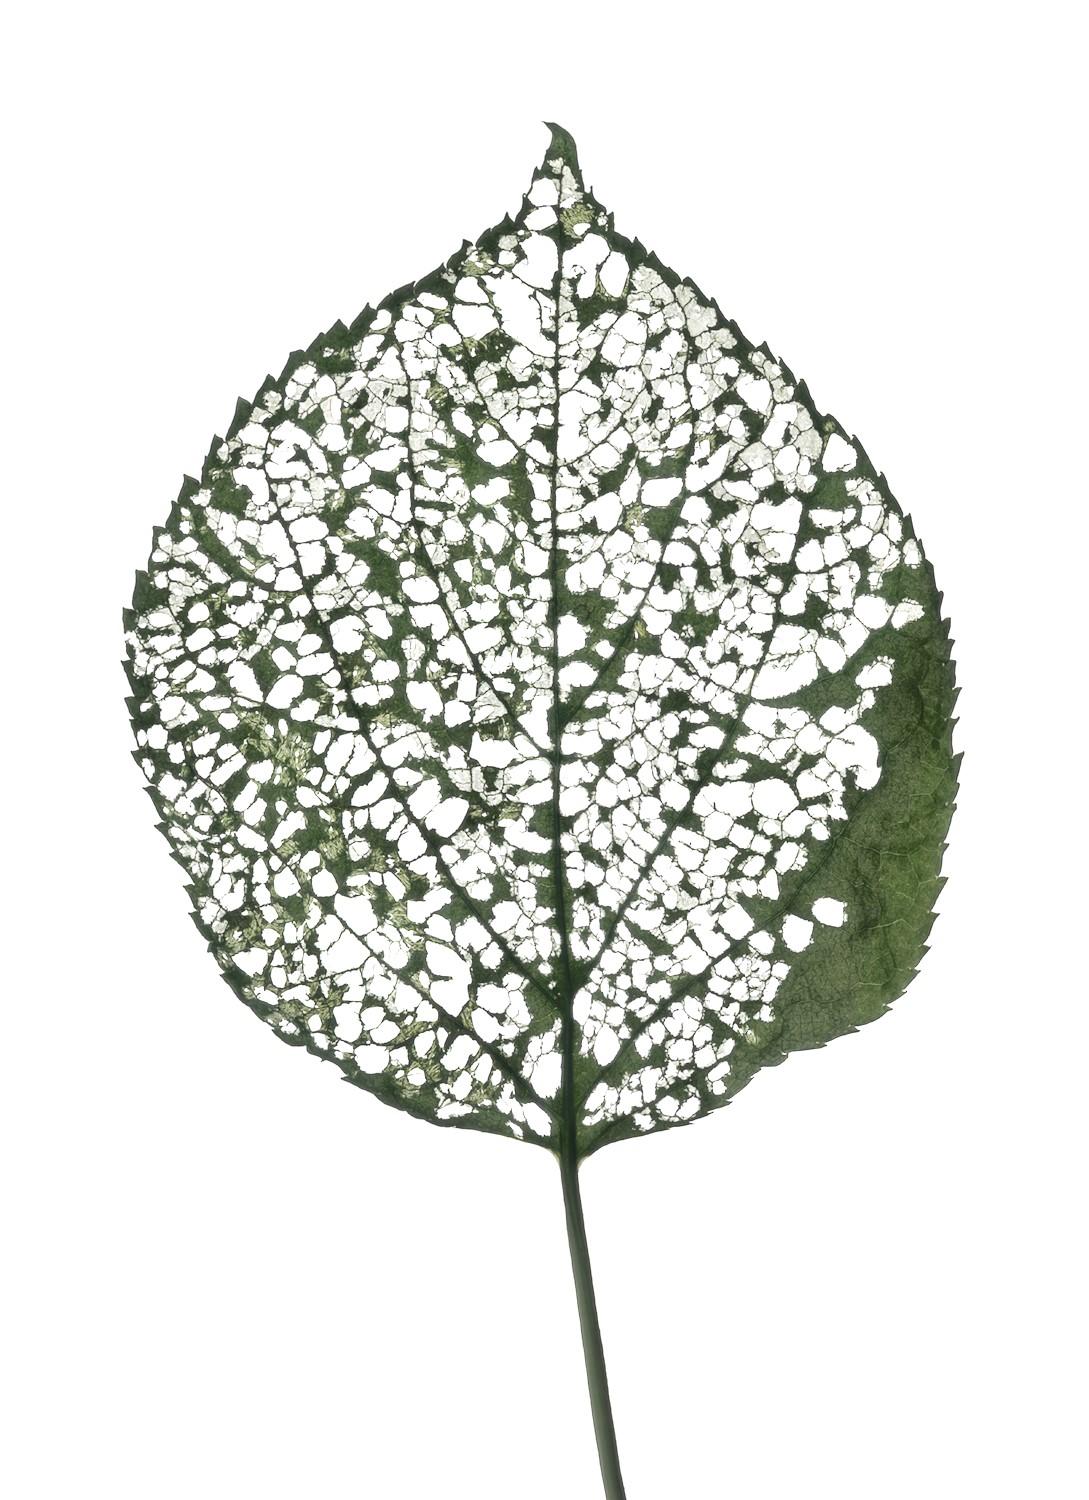 Still-Life Photograph Chad Kleitsch - Eaten Leaf- #115 : Photographie scandinave couleur d'une feuille verte - Nature morte